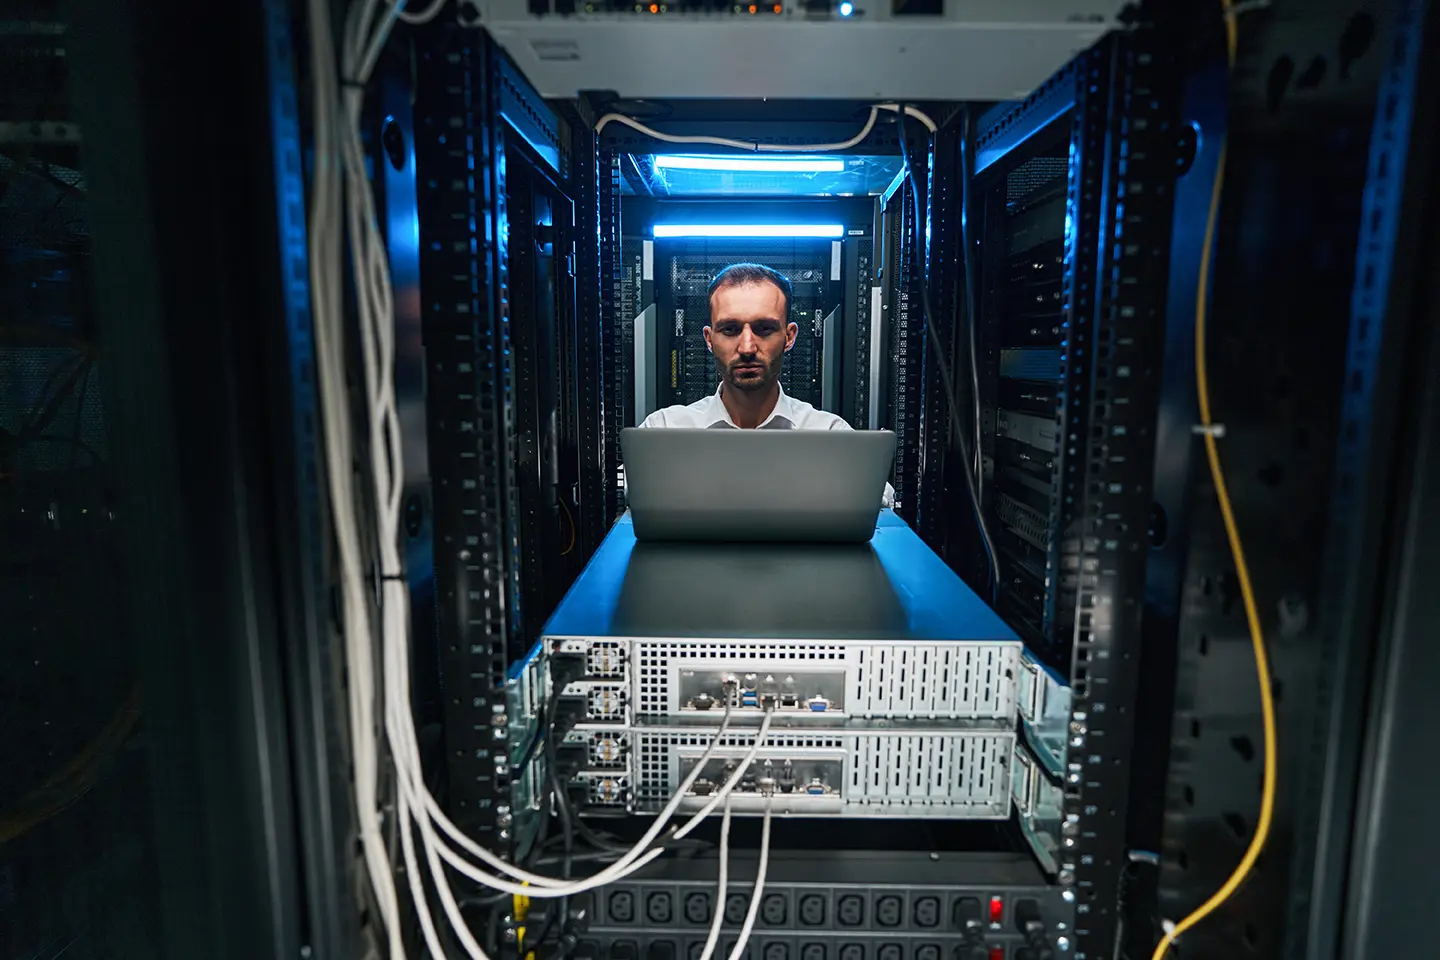 Ingeniero frente a computadora dentro de un servidor, mostrando las 8 habilidades técnicas más solicitadas por las empresas en 2018.